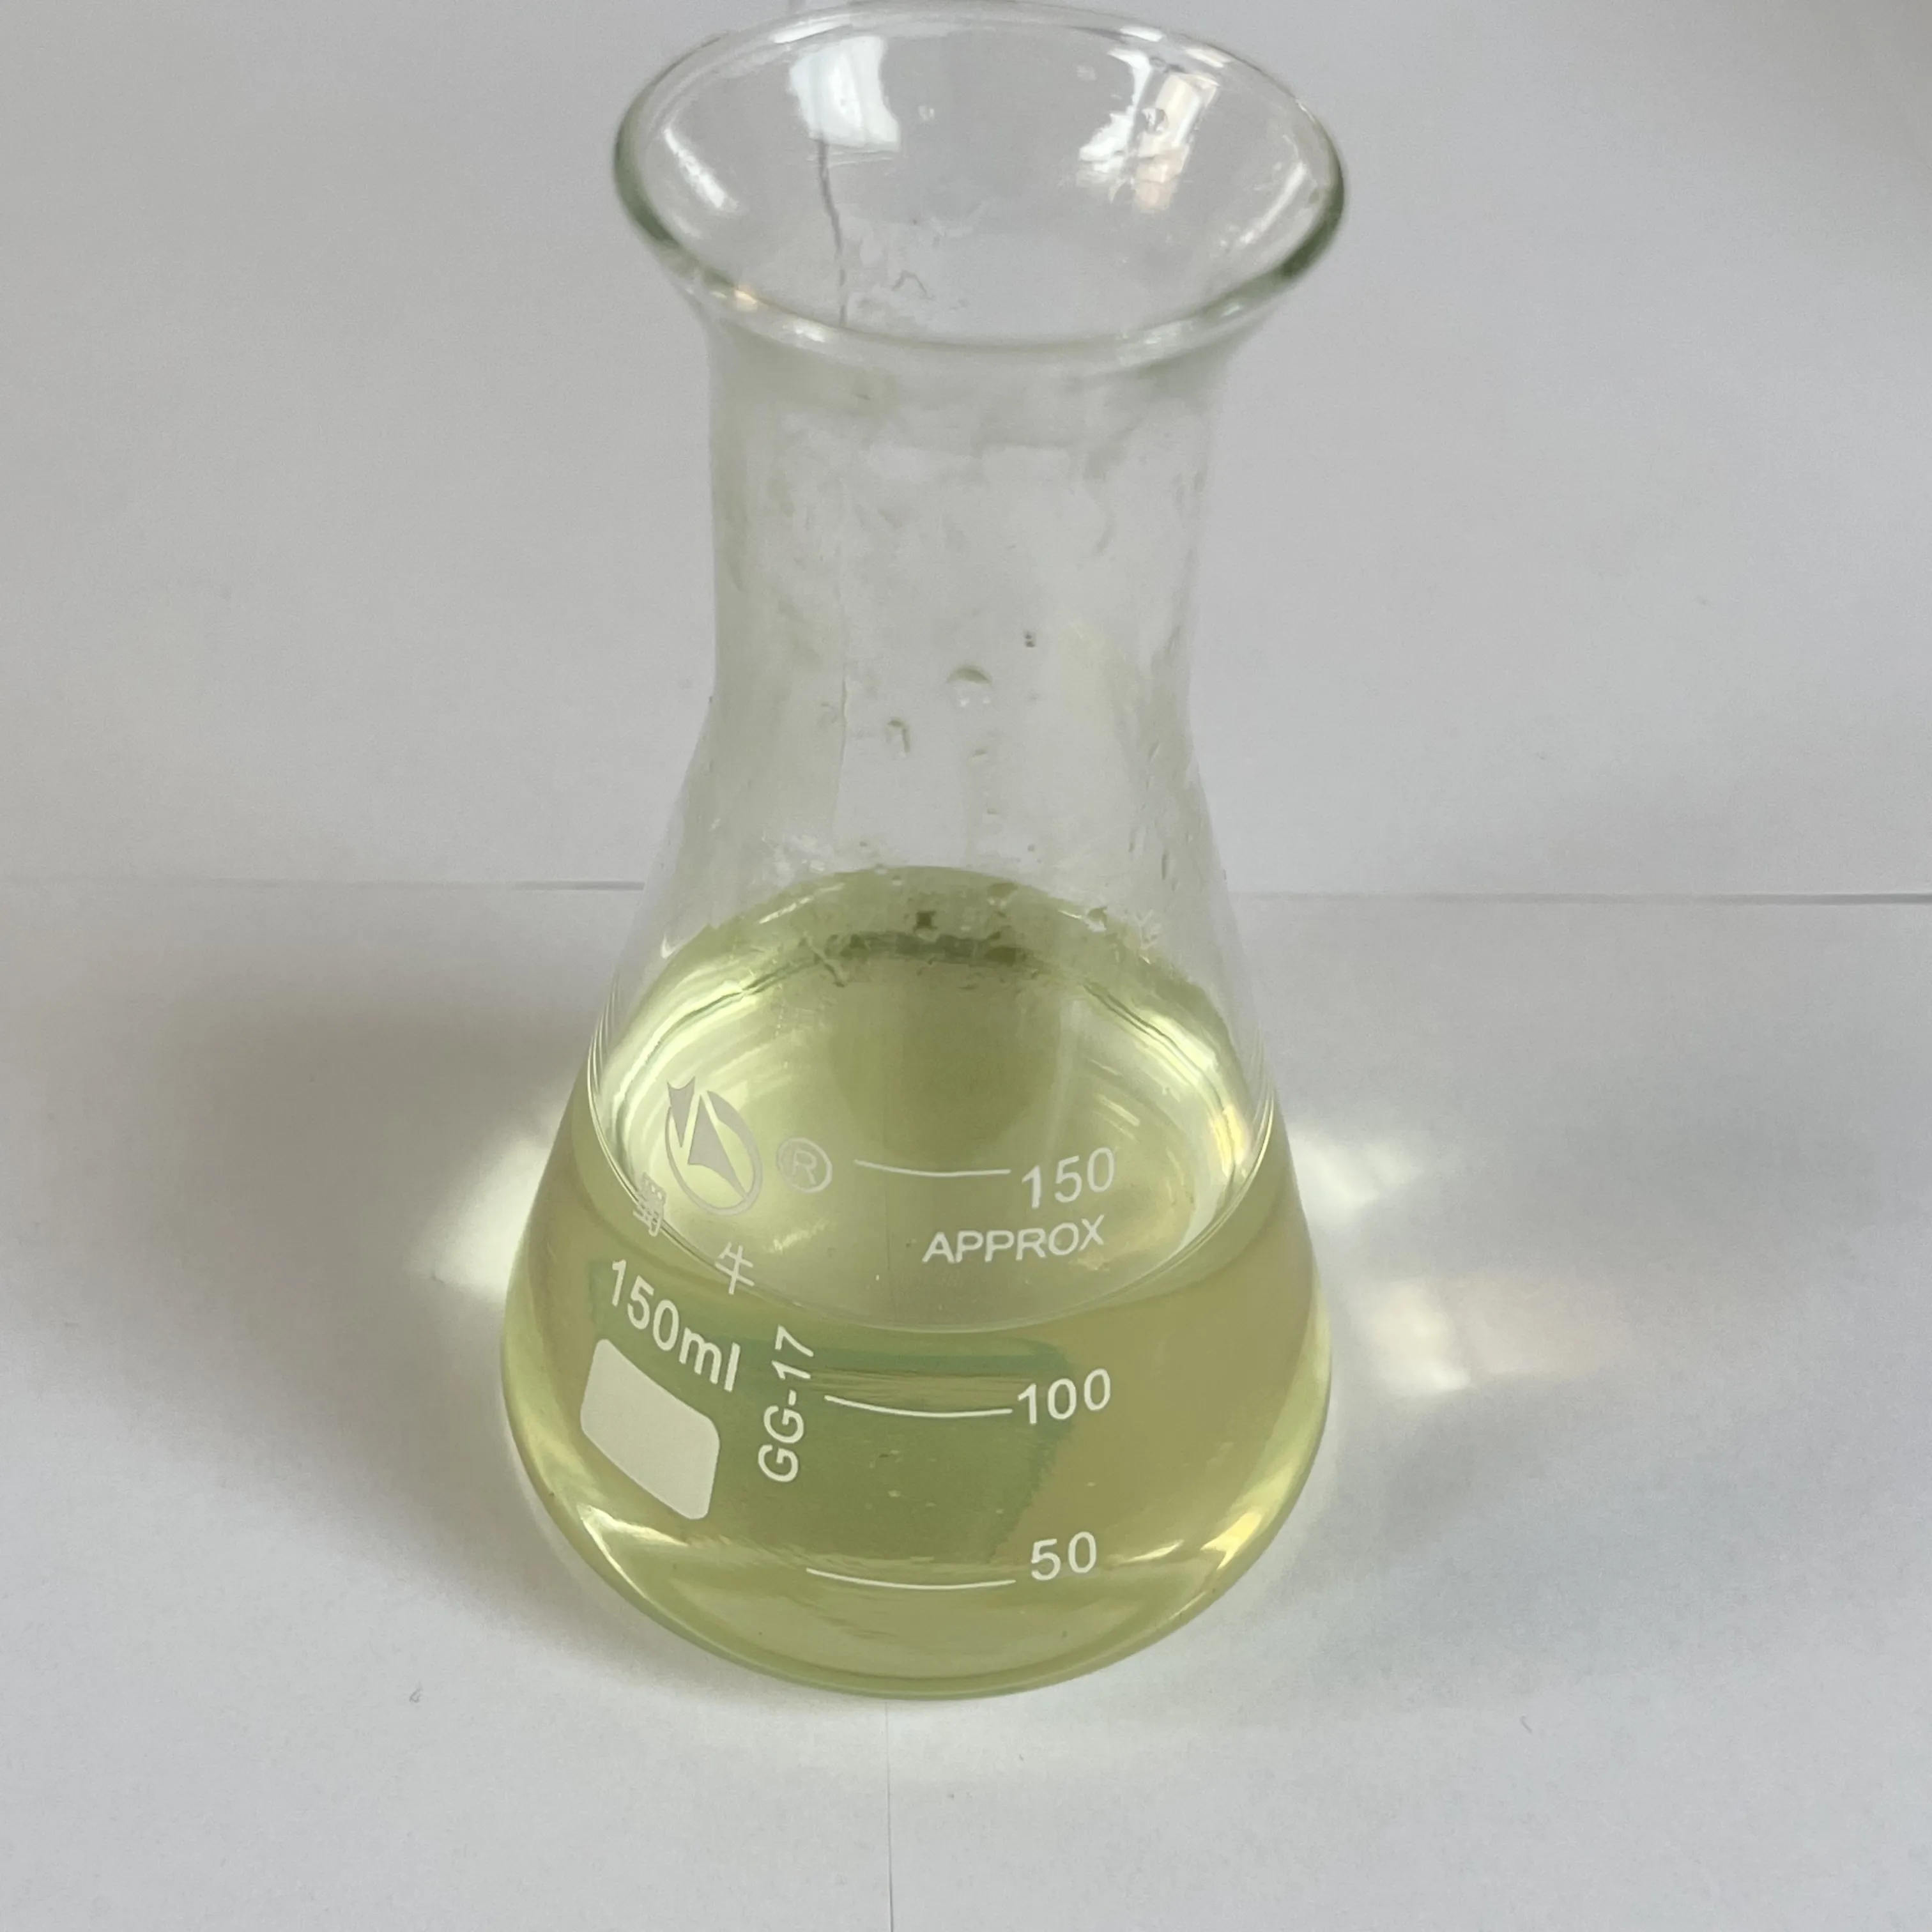 57% सांद्रता अमोनियम बिसल्फाइट का उपयोग कारमेल रंग योजकों के उत्पादन में किया जाता है